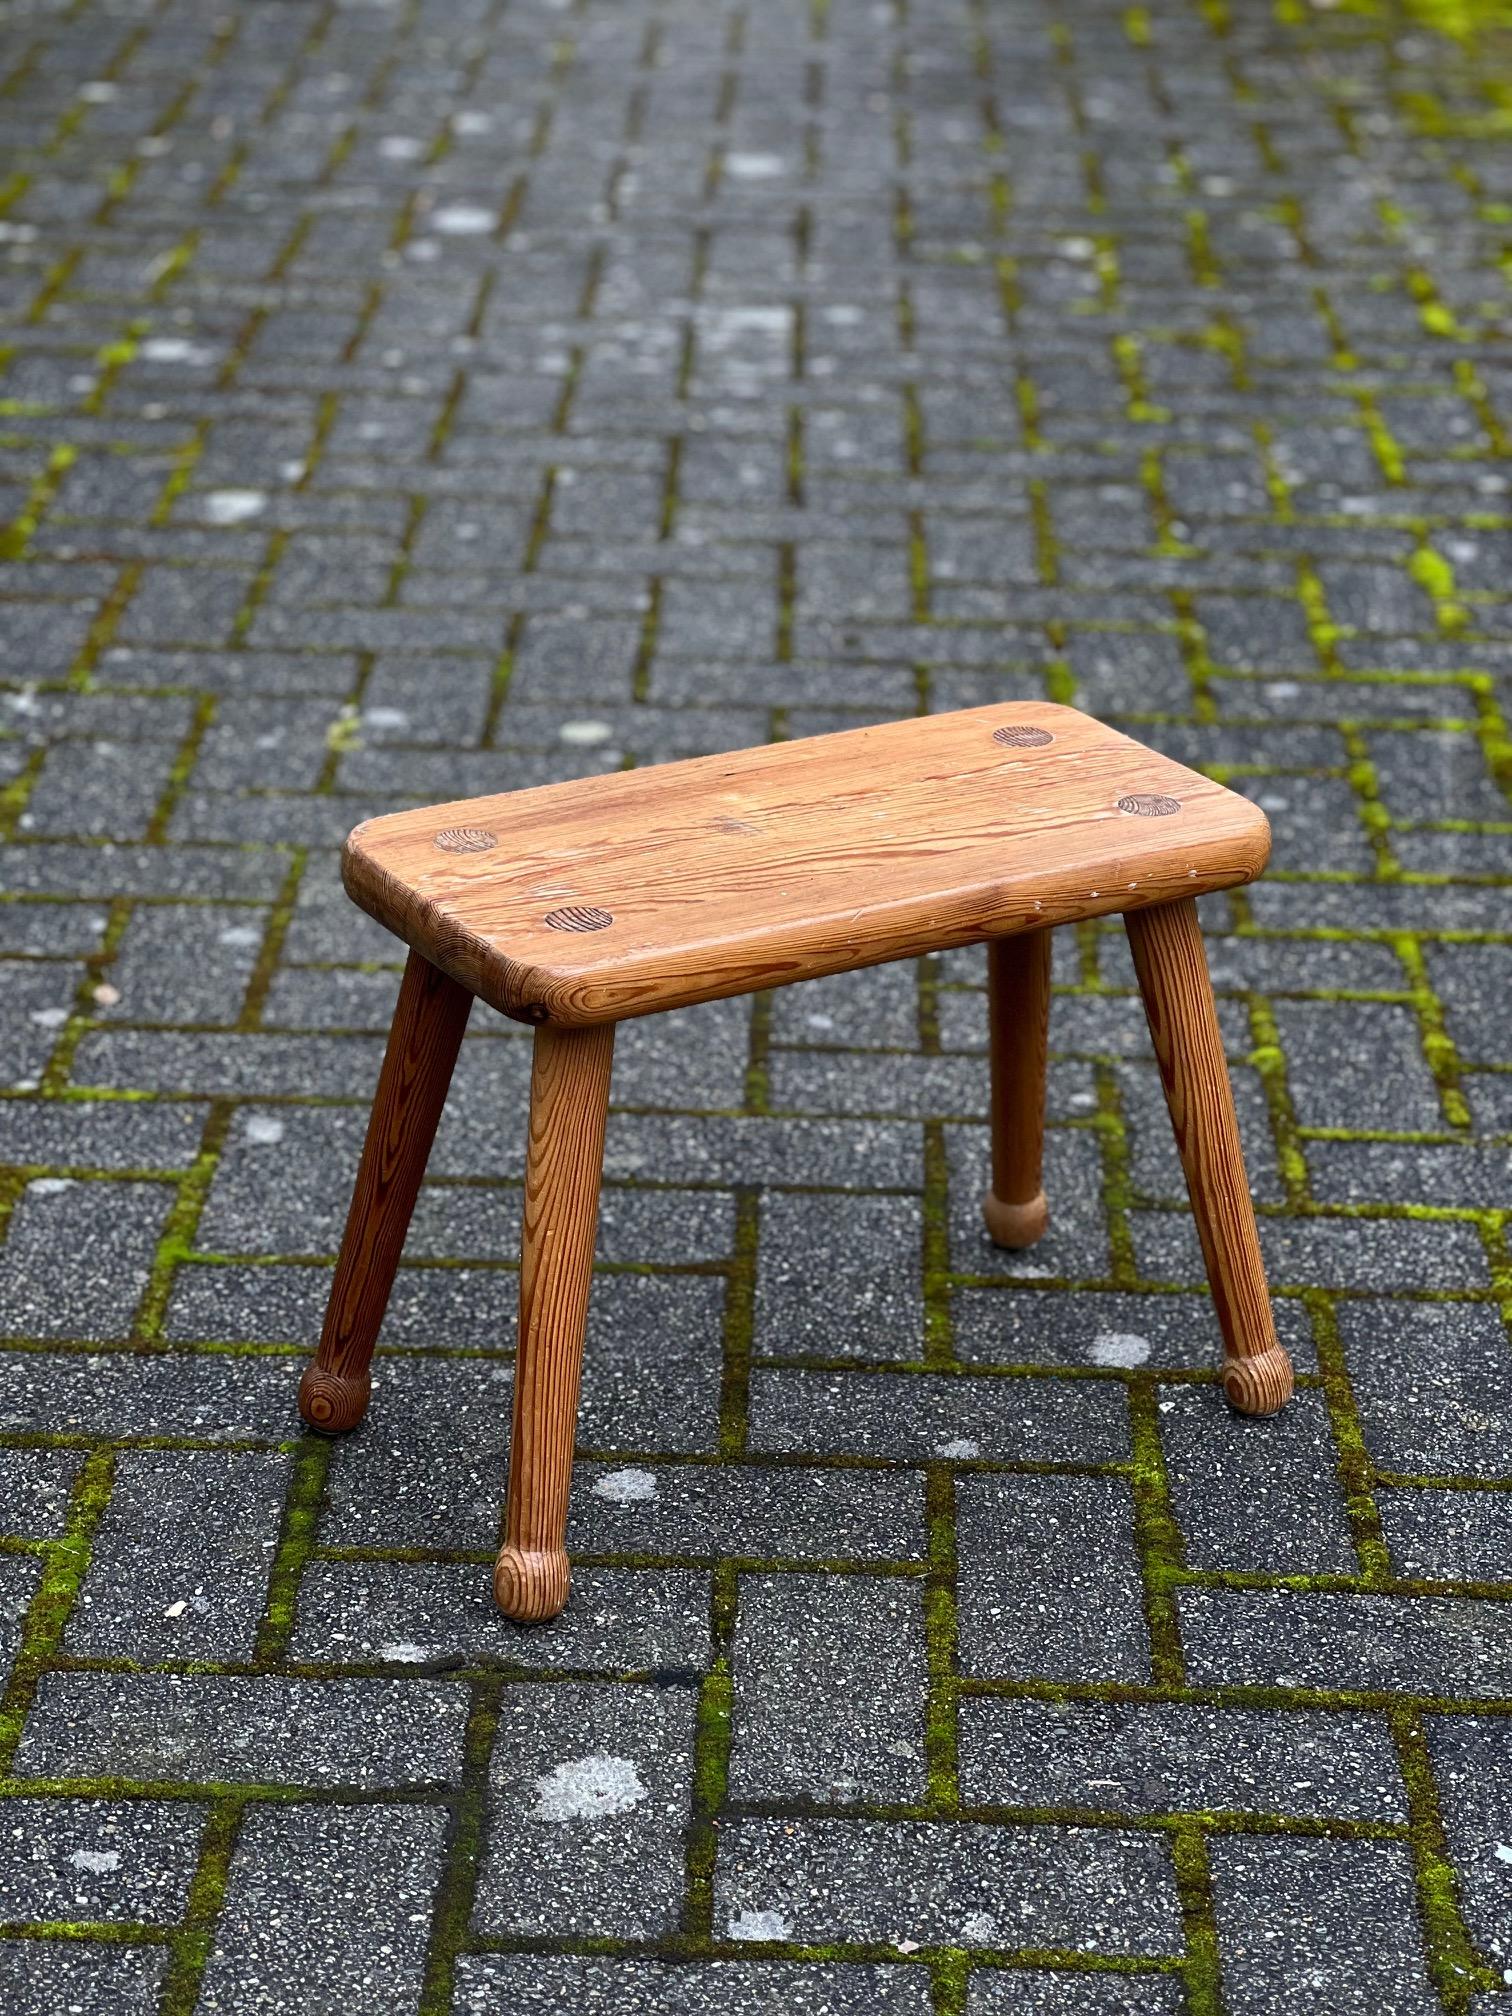 Il s'agit d'un élégant pin rectangulaire. Produit en Suède dans les années 1950. C'est une belle forme, le grain est visible, un bois de haute qualité. Les pieds peuvent être dévissés.  Belle patine sur l'ensemble. 



Carl Malmsten (7 décembre 1888